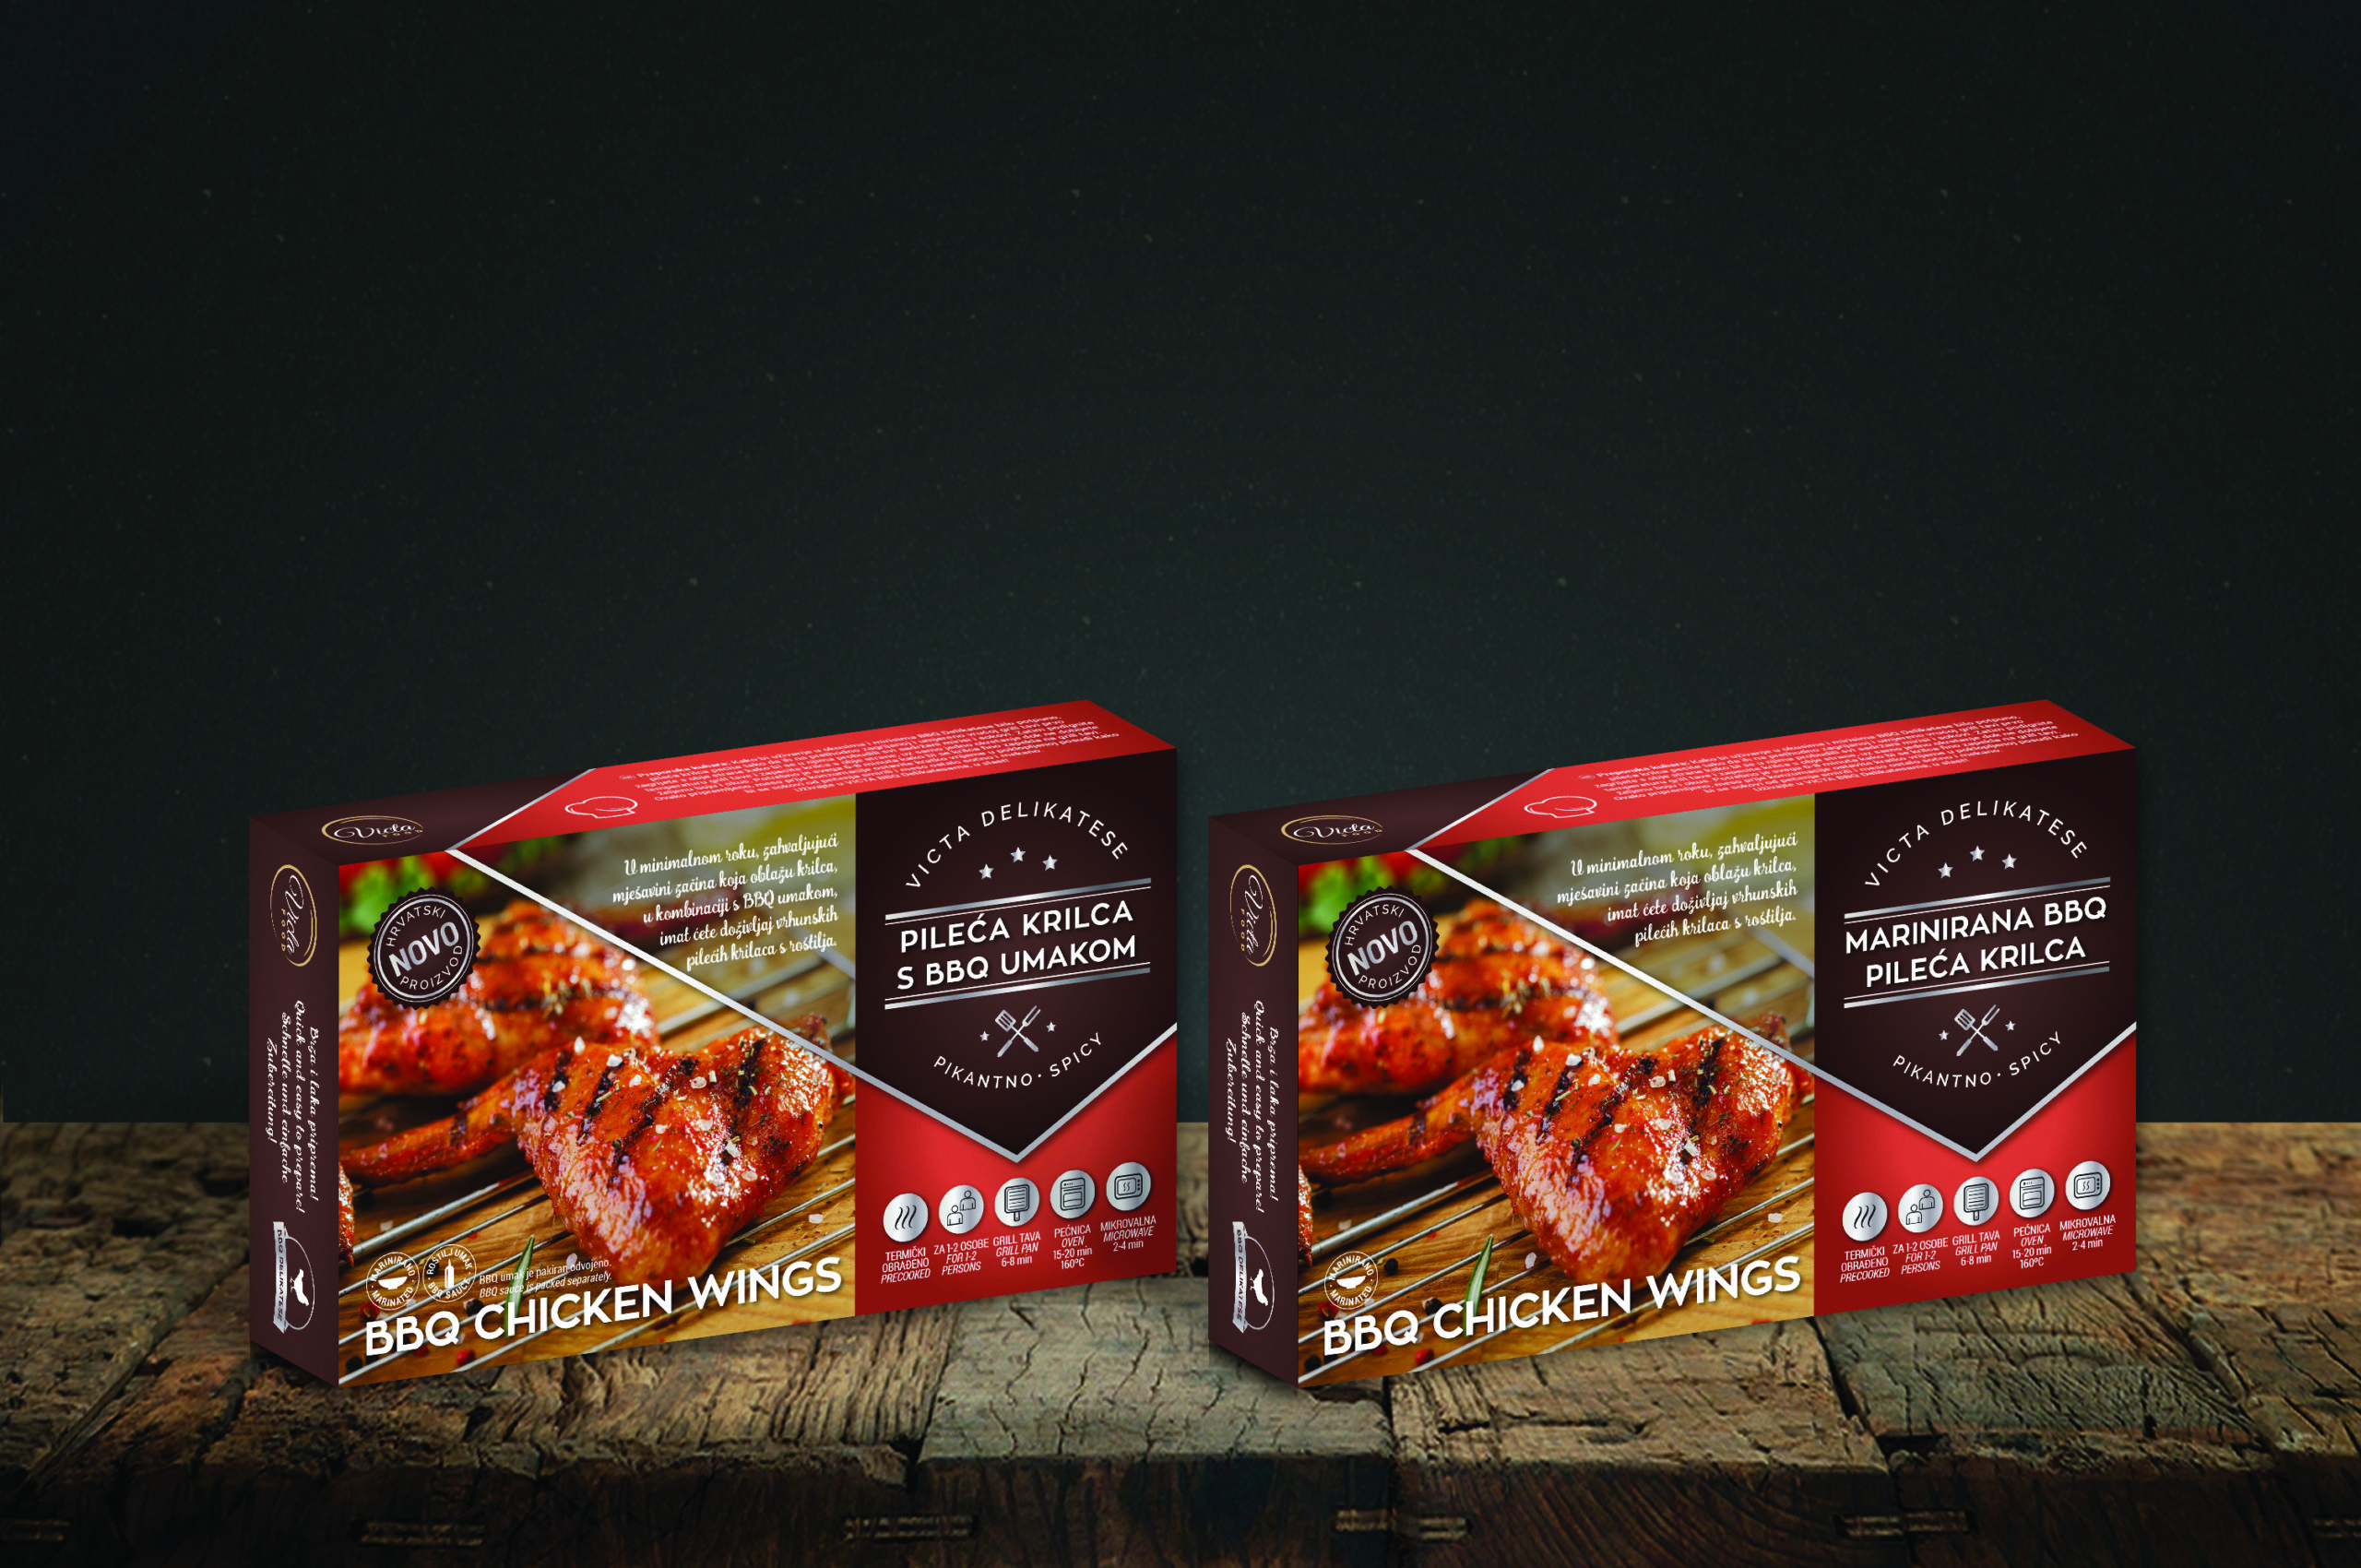 Dizajn ambalaže za mesne proizvode Victa Food tvrtke. Na slici se nalaze dva pakovanja proizvoda na drvenoj podlozi sa tamno sivom pozadinom. Dizajn je crvene boje sa tamno smeđim dijelovima na kojima se nalazi bijeli tekst. Na pakovanju je i slika proizvoda.